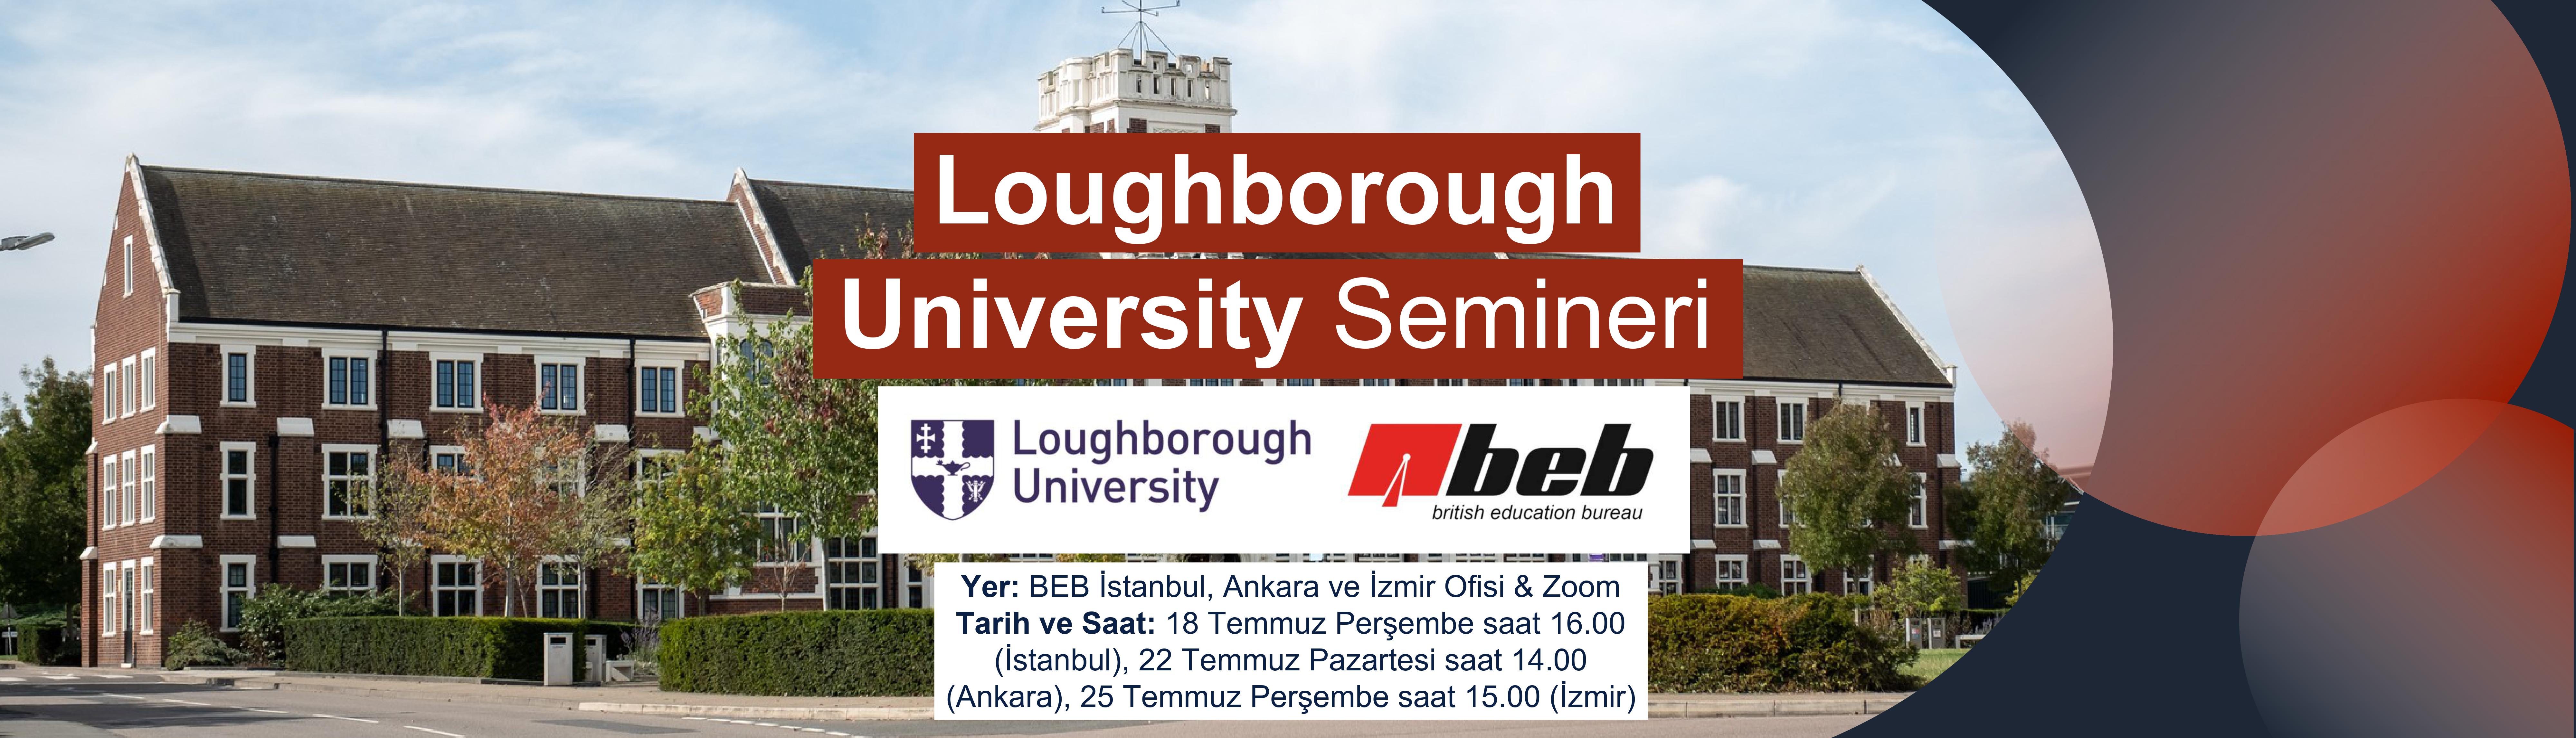 BEB-Loughborough-University-Semineri